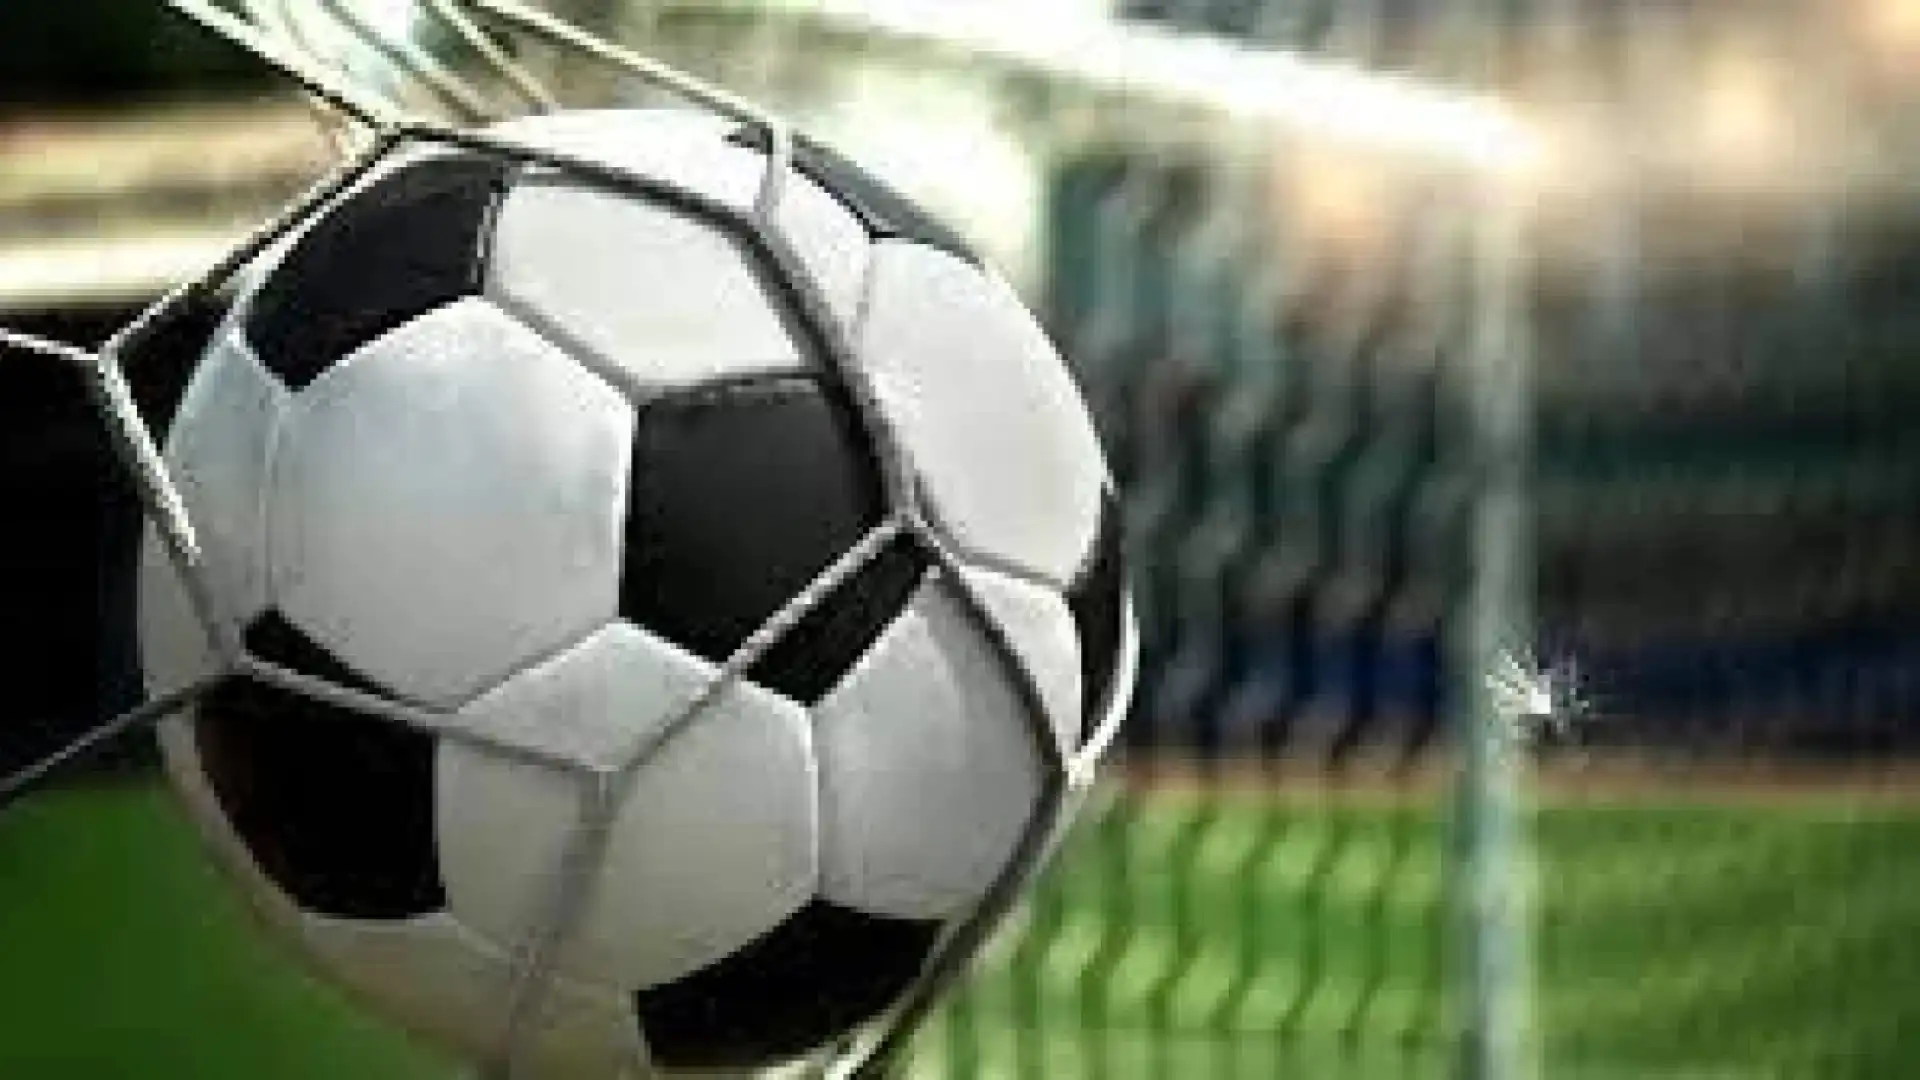 Calcio: serie D girone F, Eccellenza , Promozione Molise e Prima categoria girone A. Le gare in programma nel fine settimana sportivo.